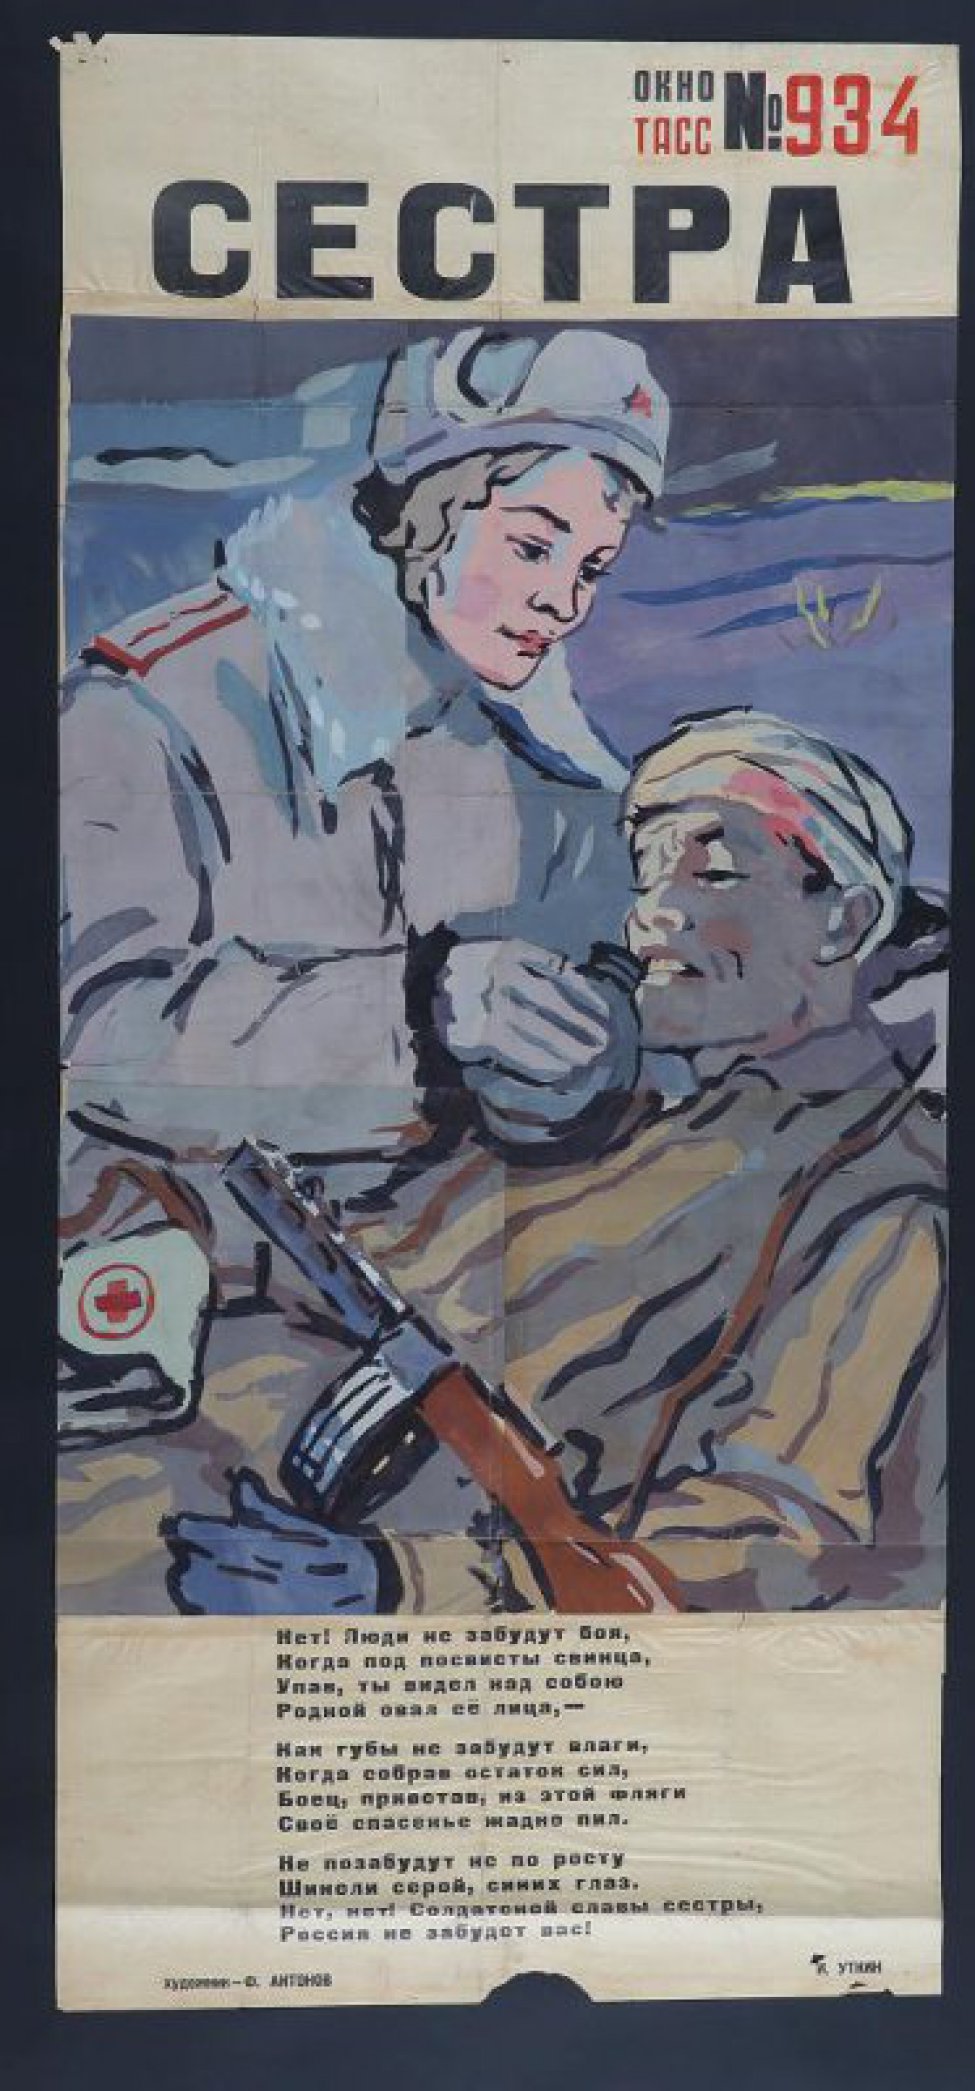 Изображено: раненый в голову боец,около него девушка в полушубке,поит его из фляги, текст И,Уткина:" Нет! Люди не забудут боя".